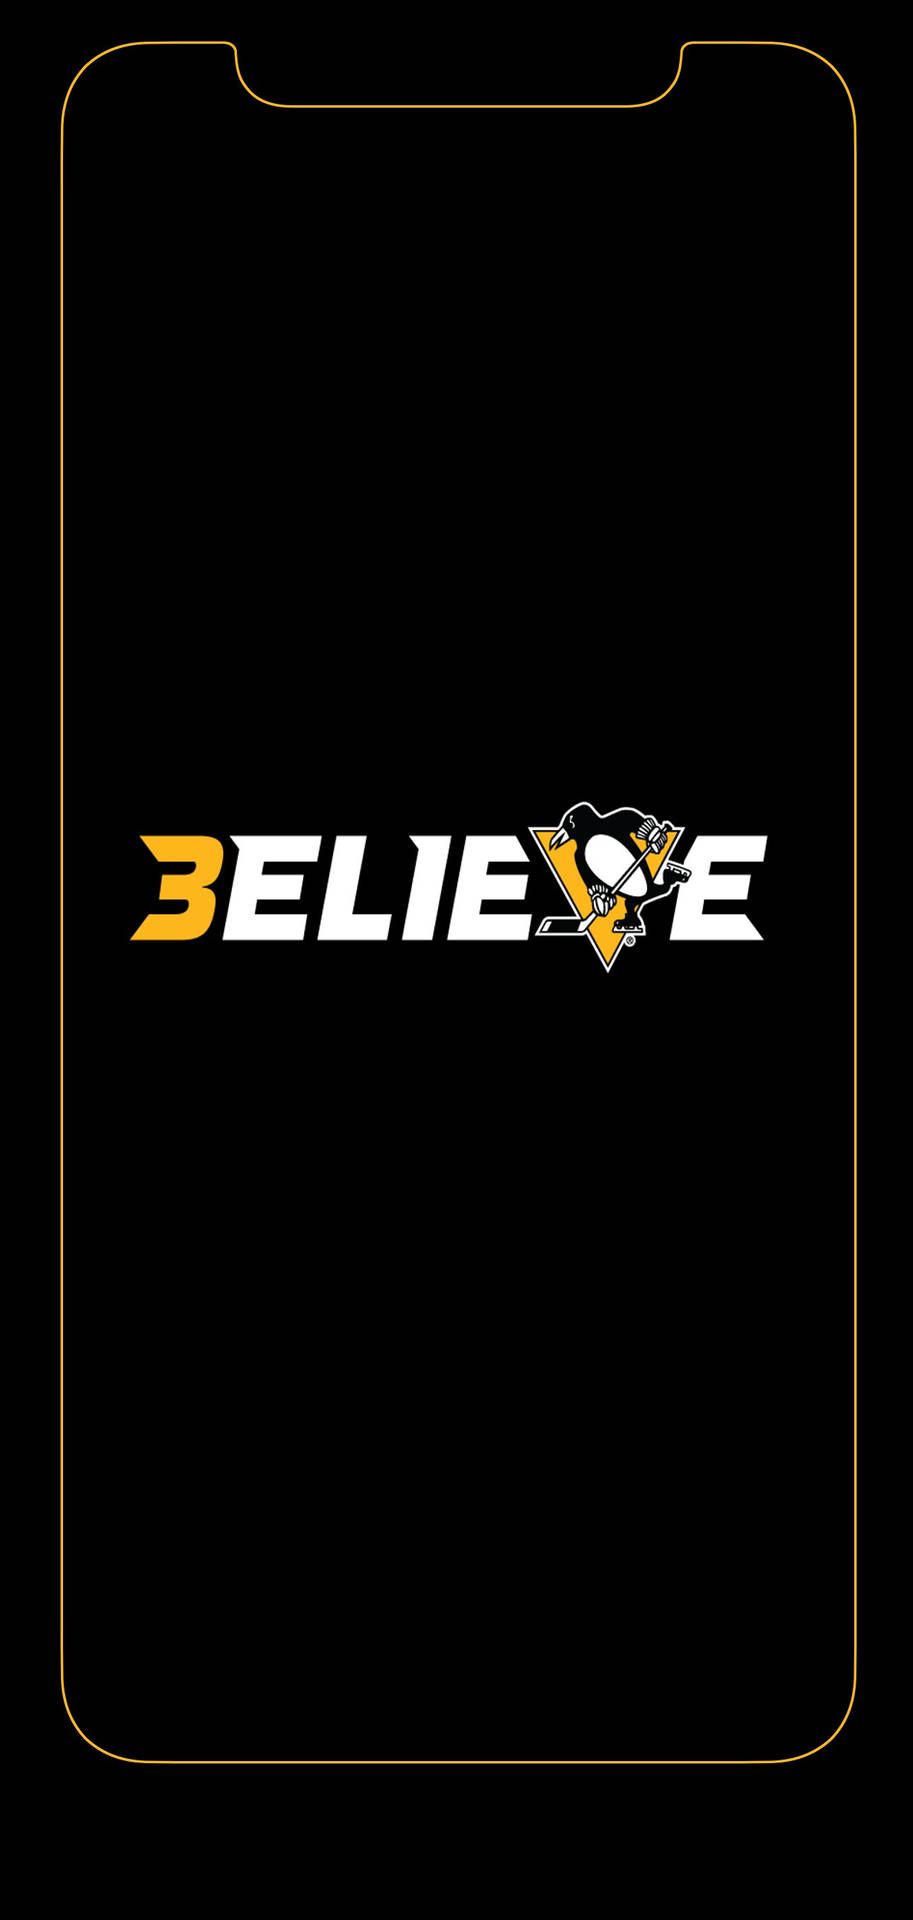 Pittsburghpenguins Glaube Logo Wallpaper